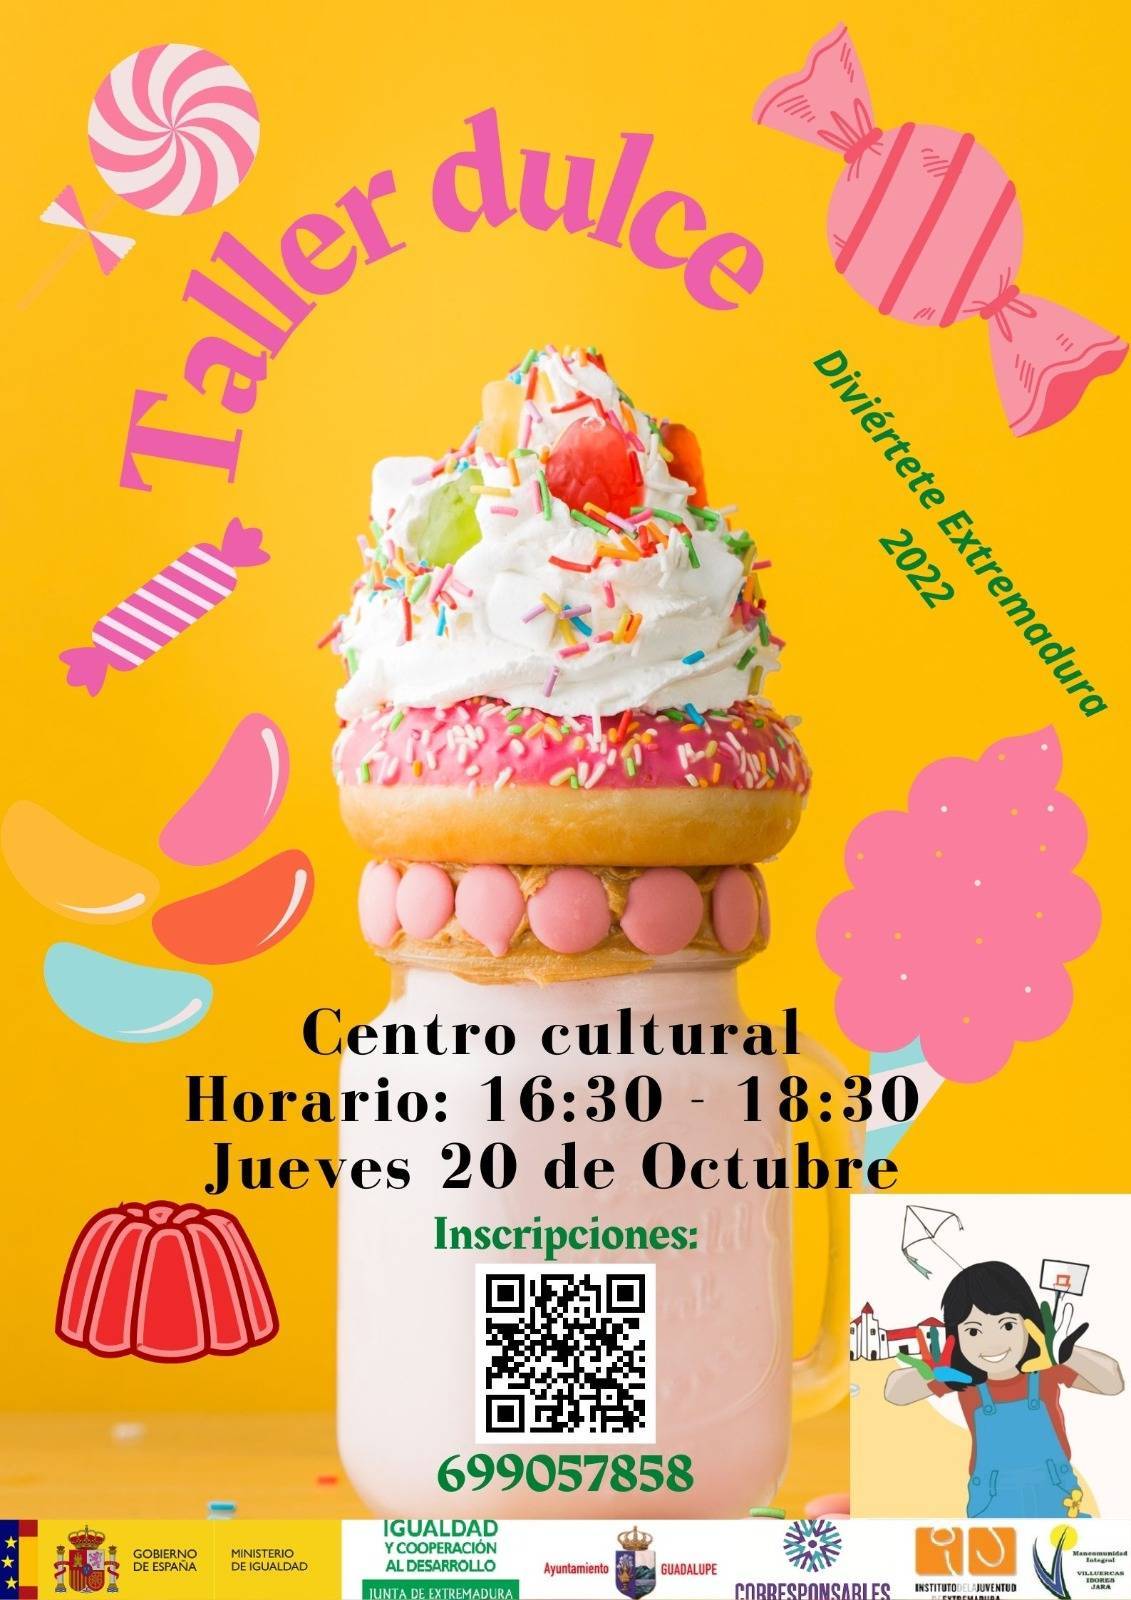 Taller de dulces (octubre 2022) - Guadalupe (Cáceres)